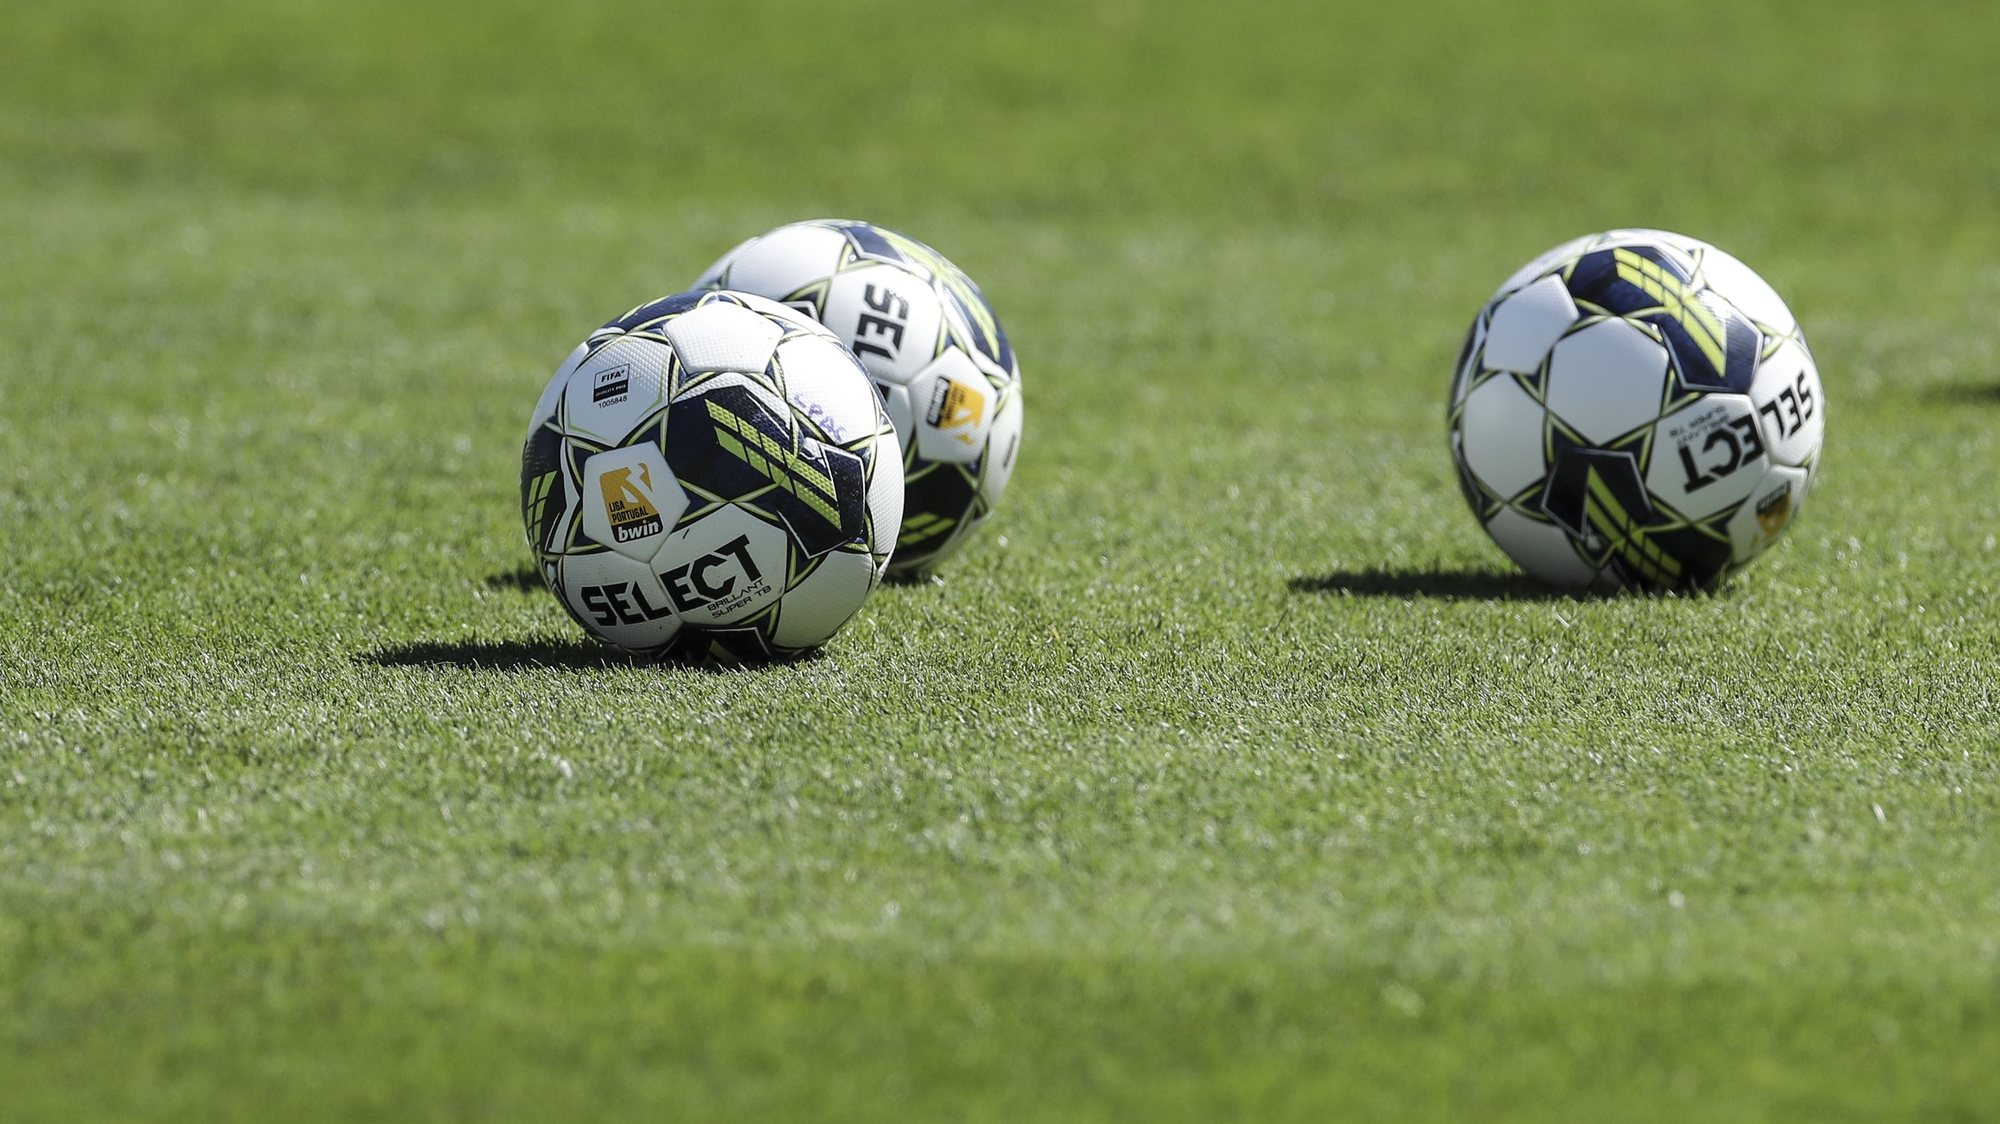 Jogos na I Liga portuguesa duram agora, em média, 104 minutos